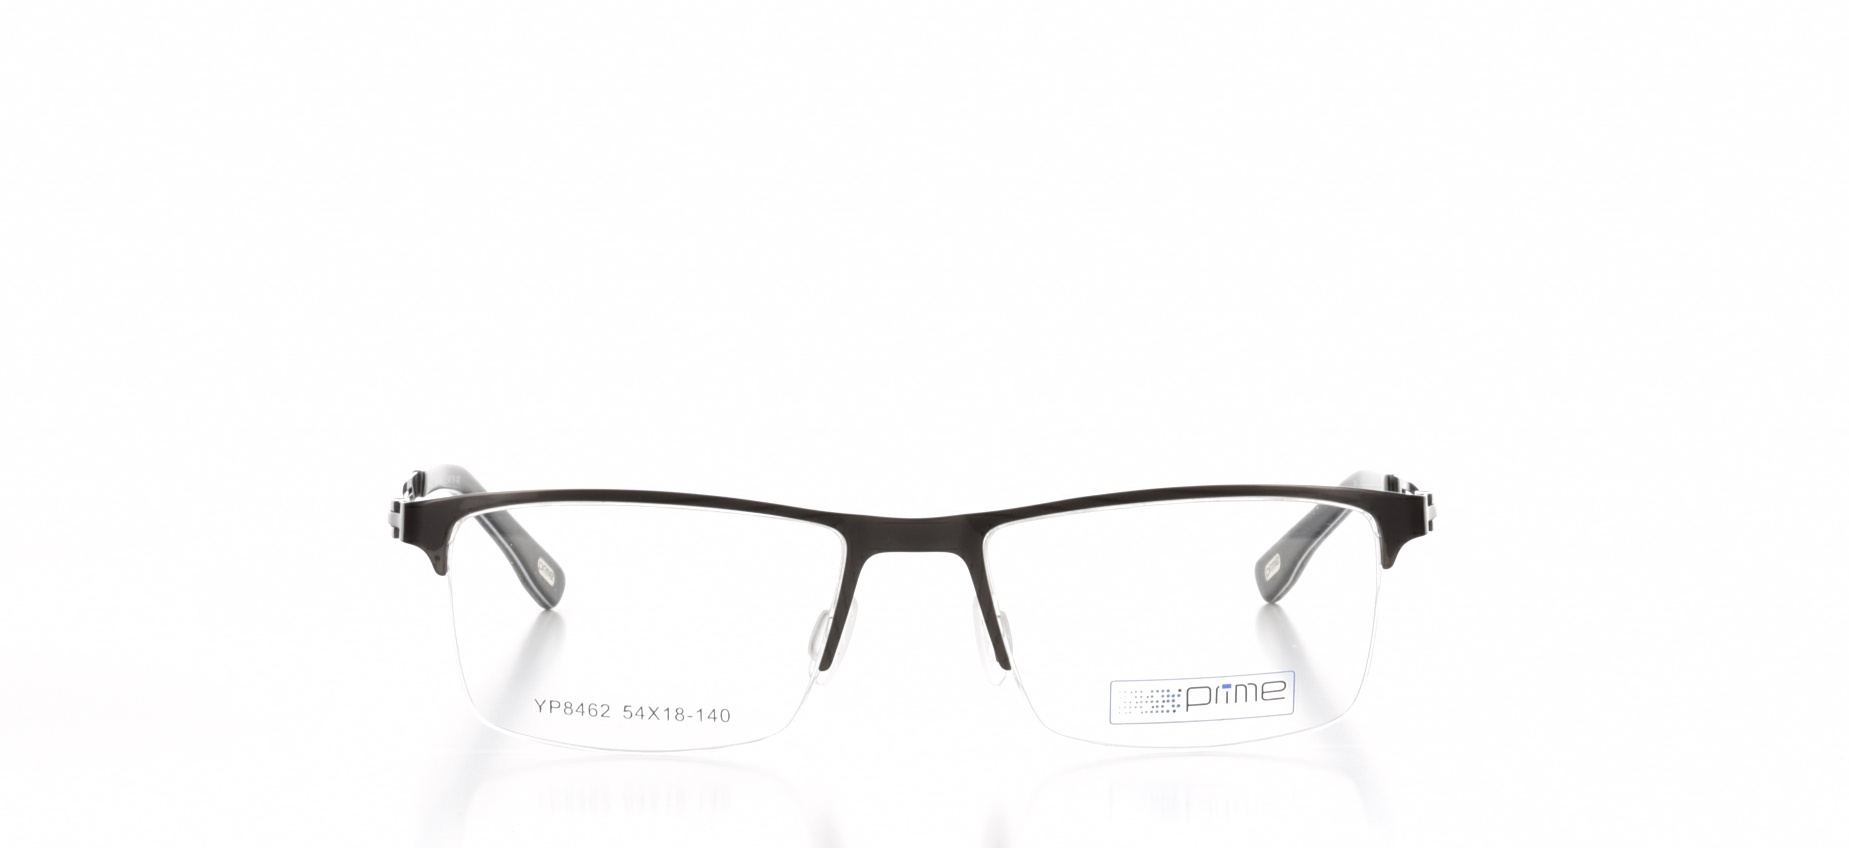 Rama ochelari vedere Prime